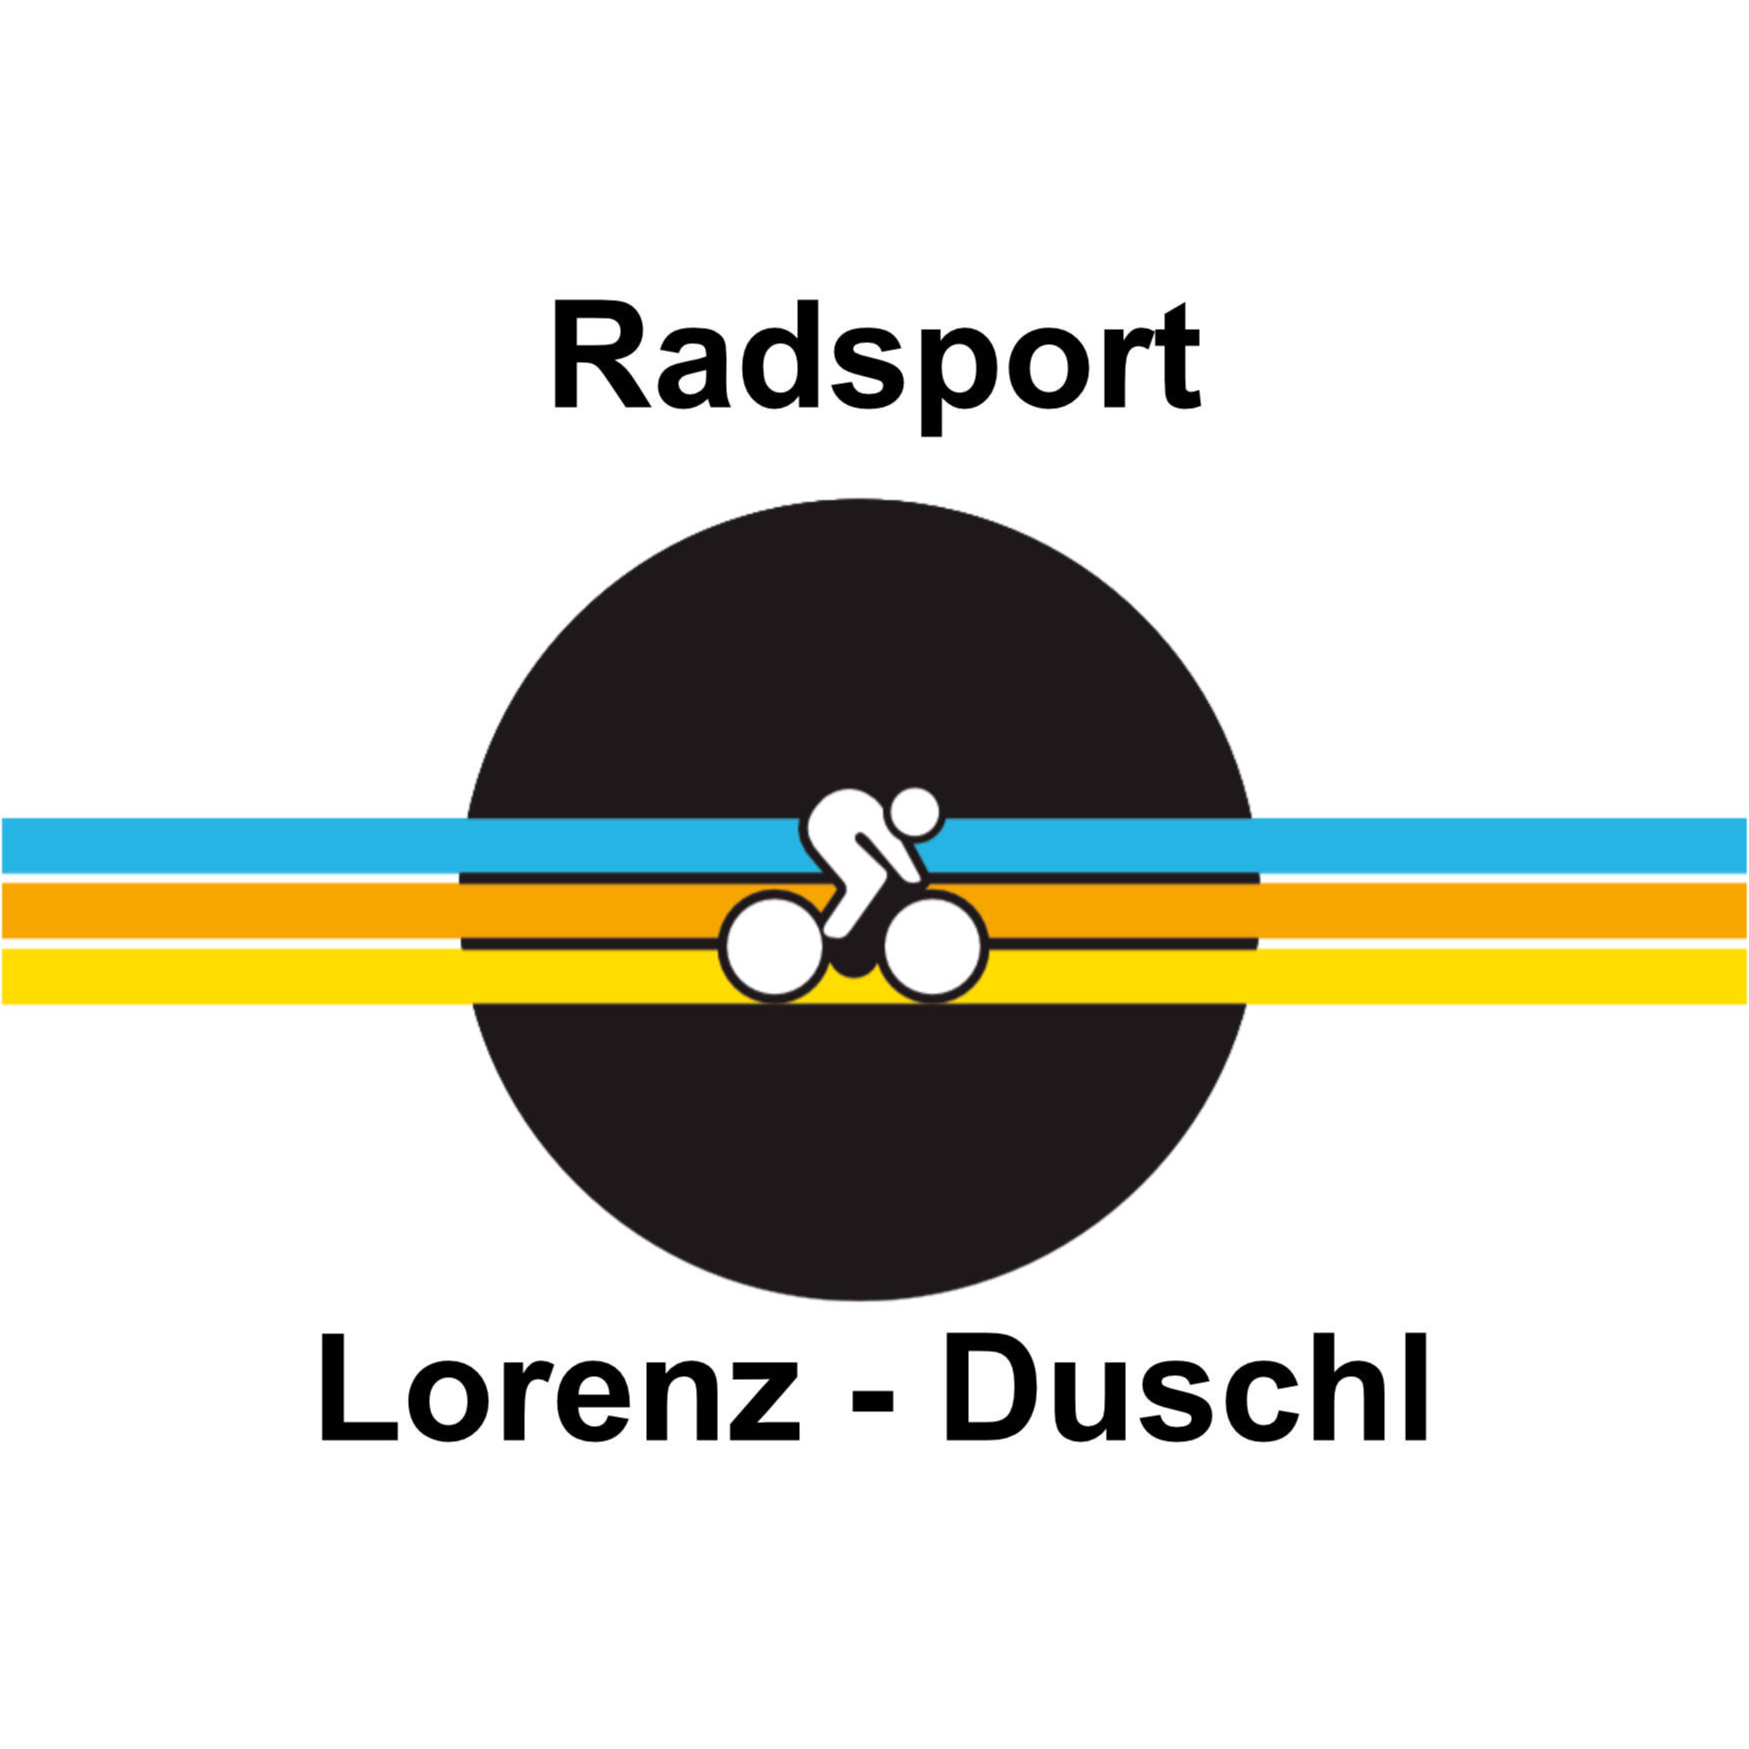 Logo Radsport Duschl - R. Lorenz